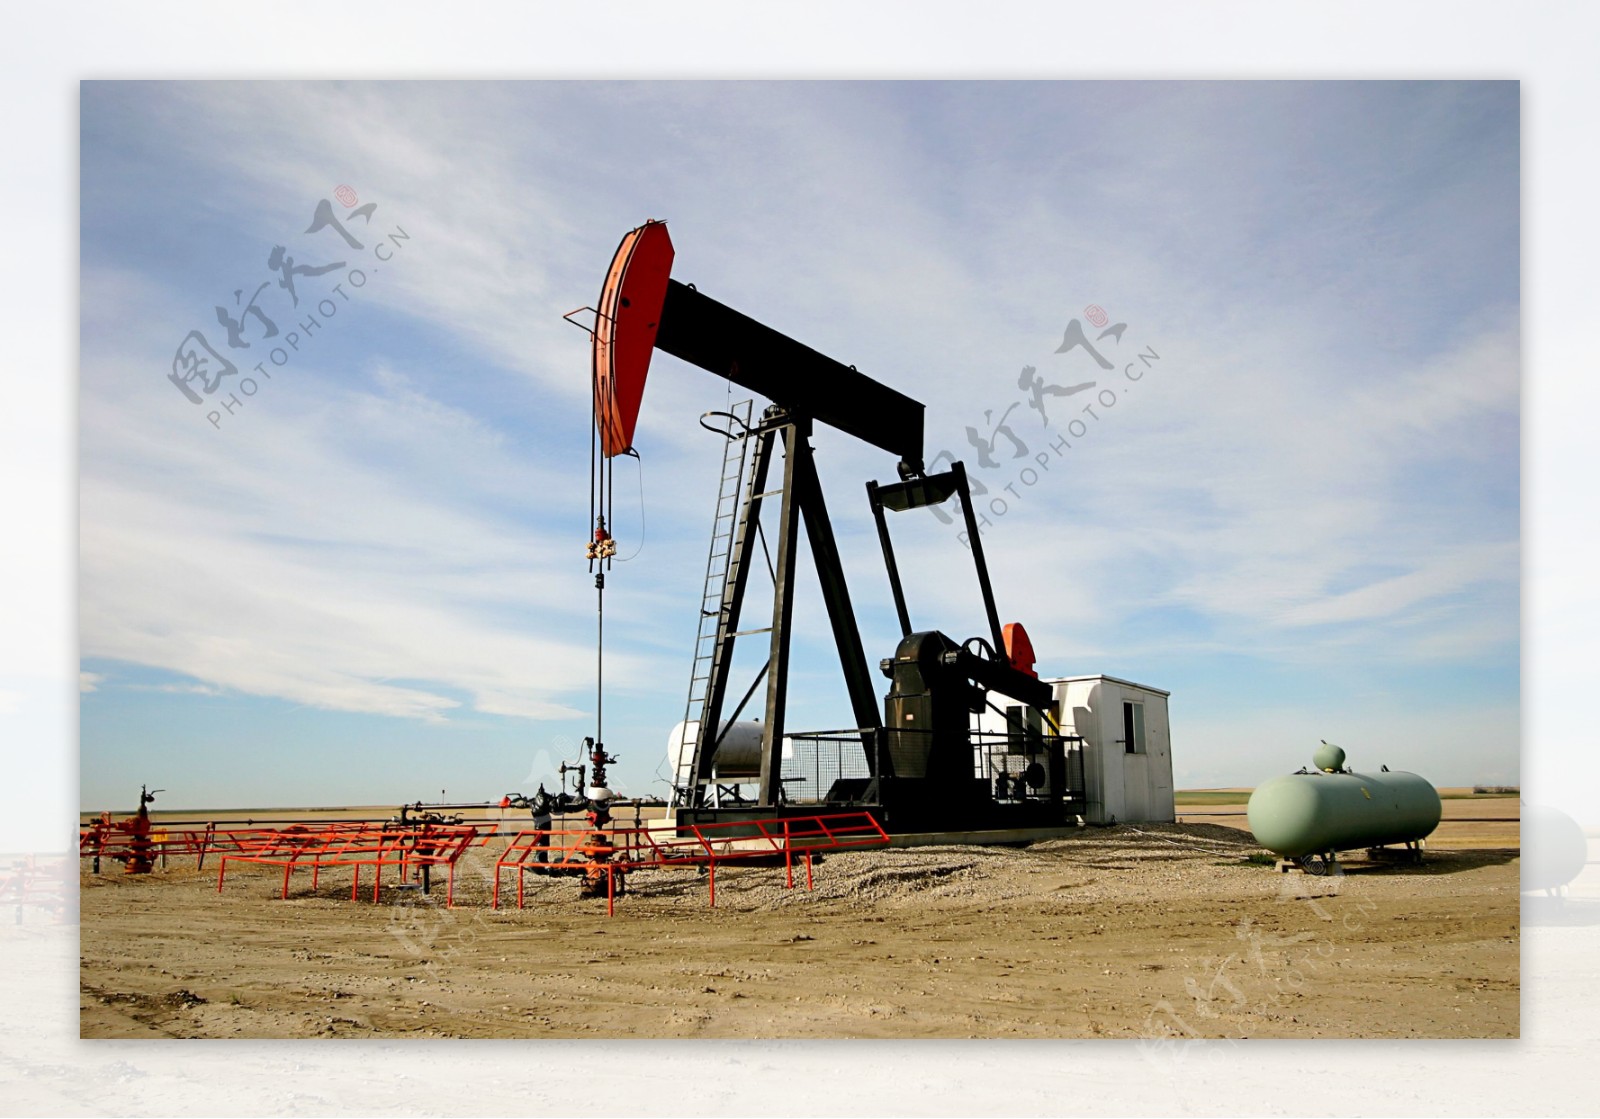 挖油设备与沙地风景图片